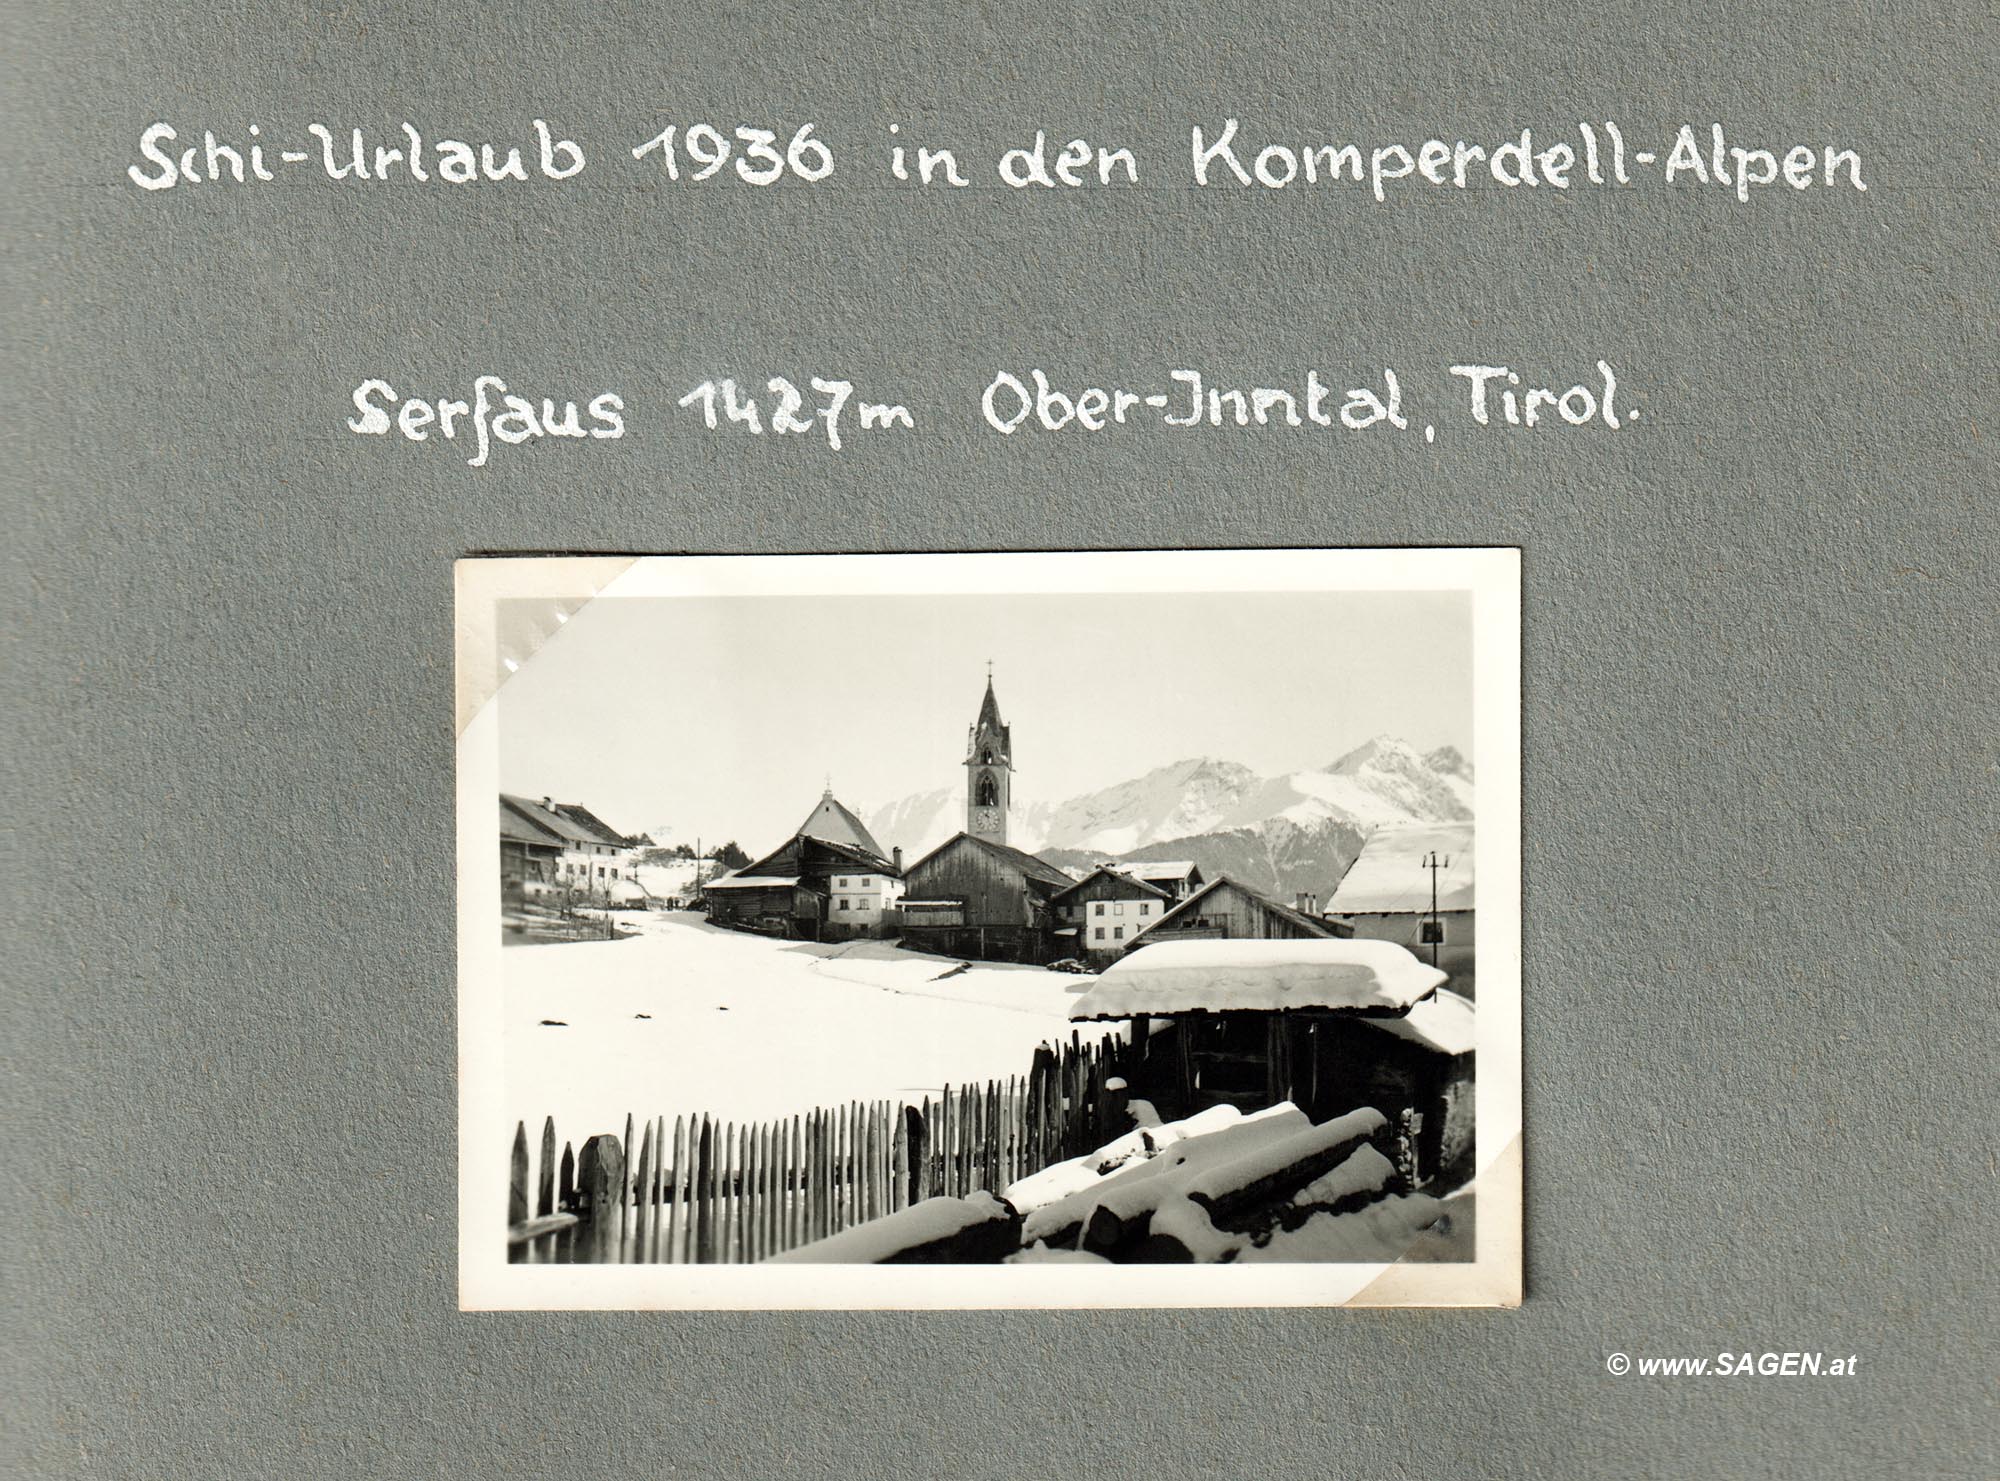 Schi-Urlaub 1936 in den Komperdell-Alpen (Schi-Urlaub 1936 in Serfaus, Tirol)